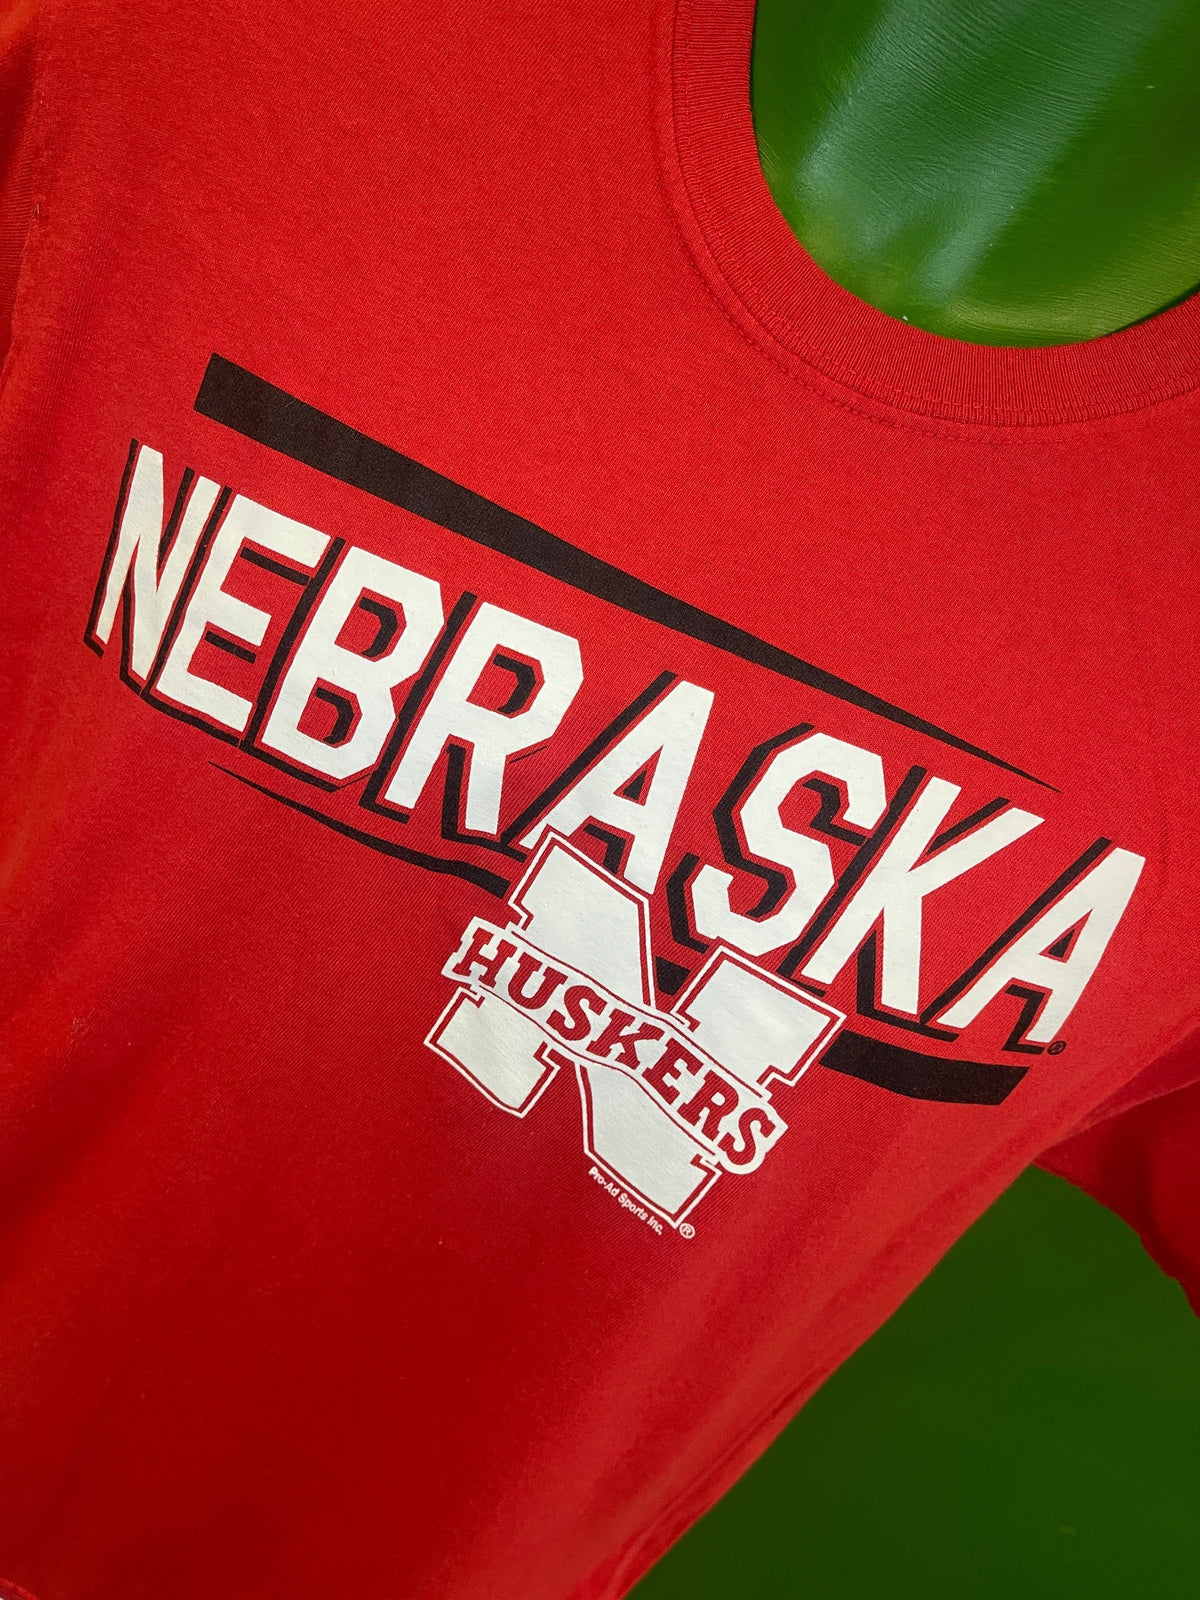 NCAA Nebraska Cornhuskers Bright Red T-Shirt Men's Medium